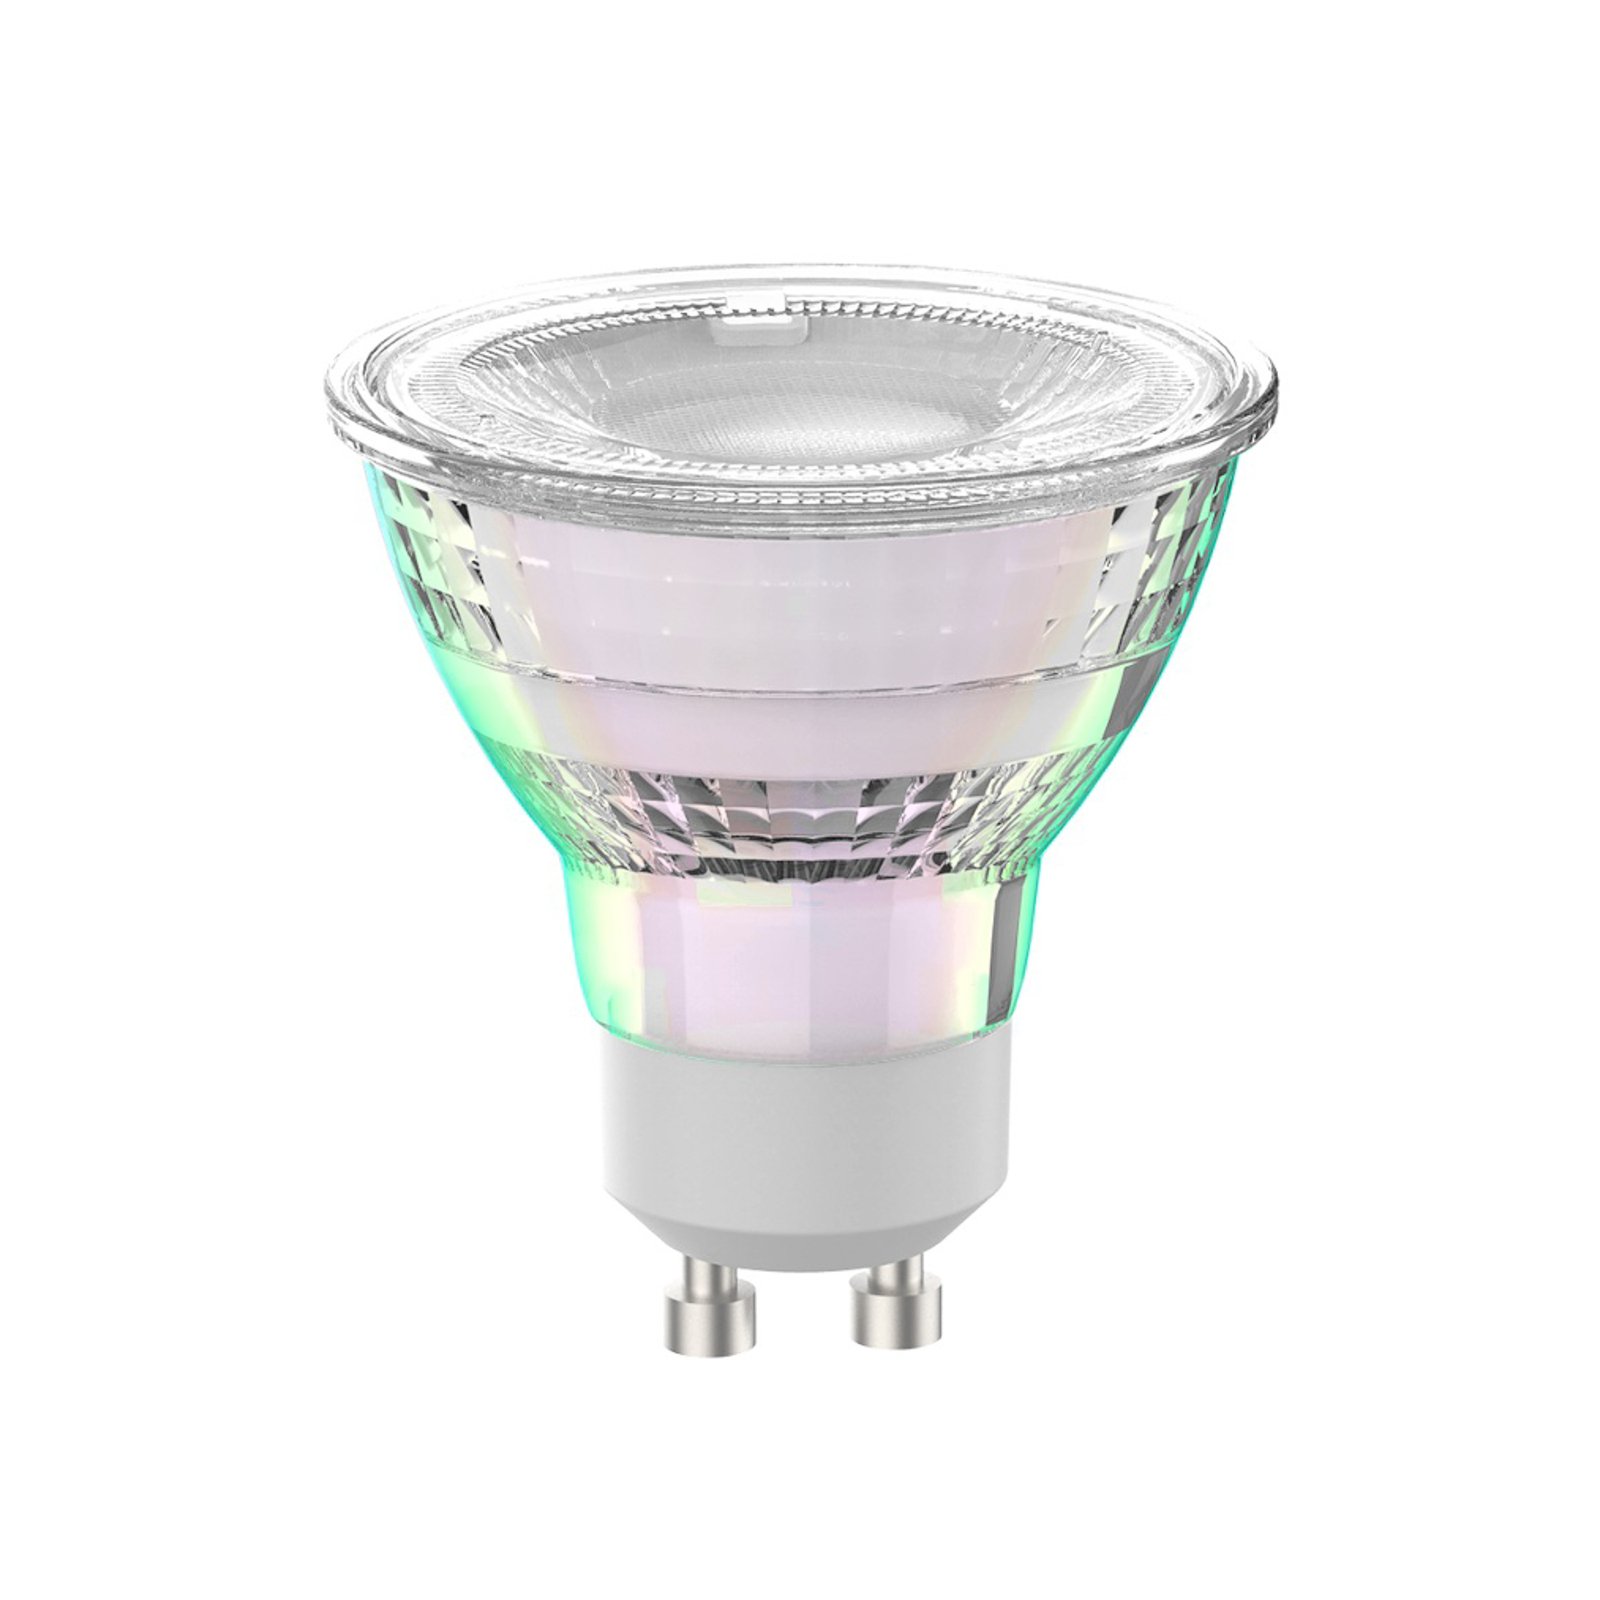 Arcchio LED lamp GU10 2.5W 4000K 450lm glas set van 3